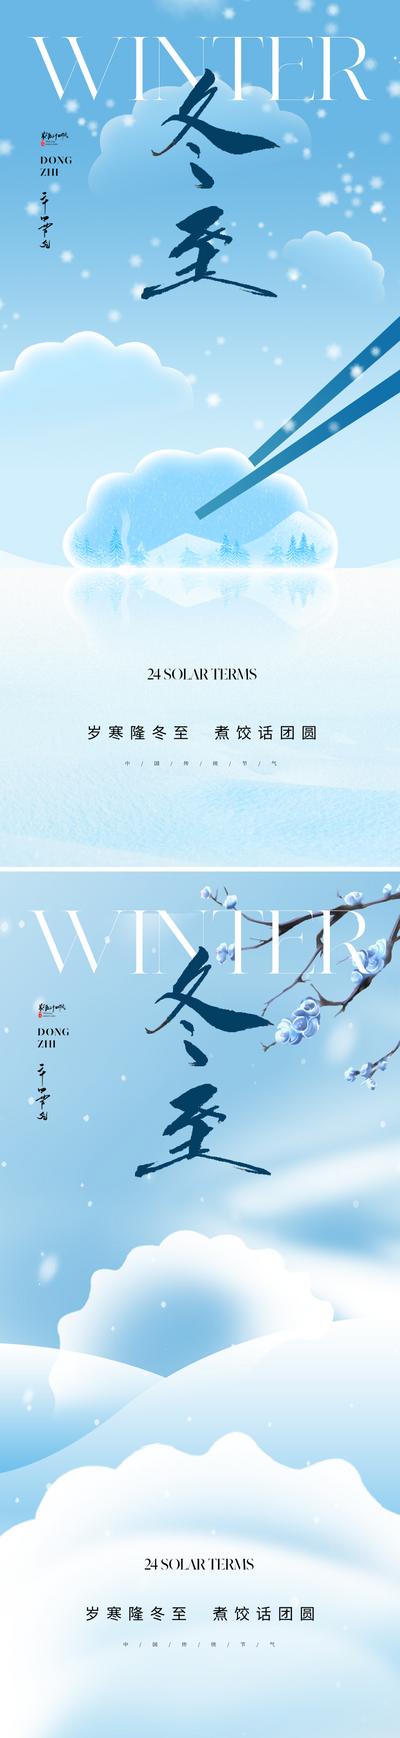 南门网 广告 海报 地产 冬至 节气 中式 高端 创意 冬天 饺子 筷子 抽象 意向 唯美 艺术 美学 东方 雪花 蓝色 肌理